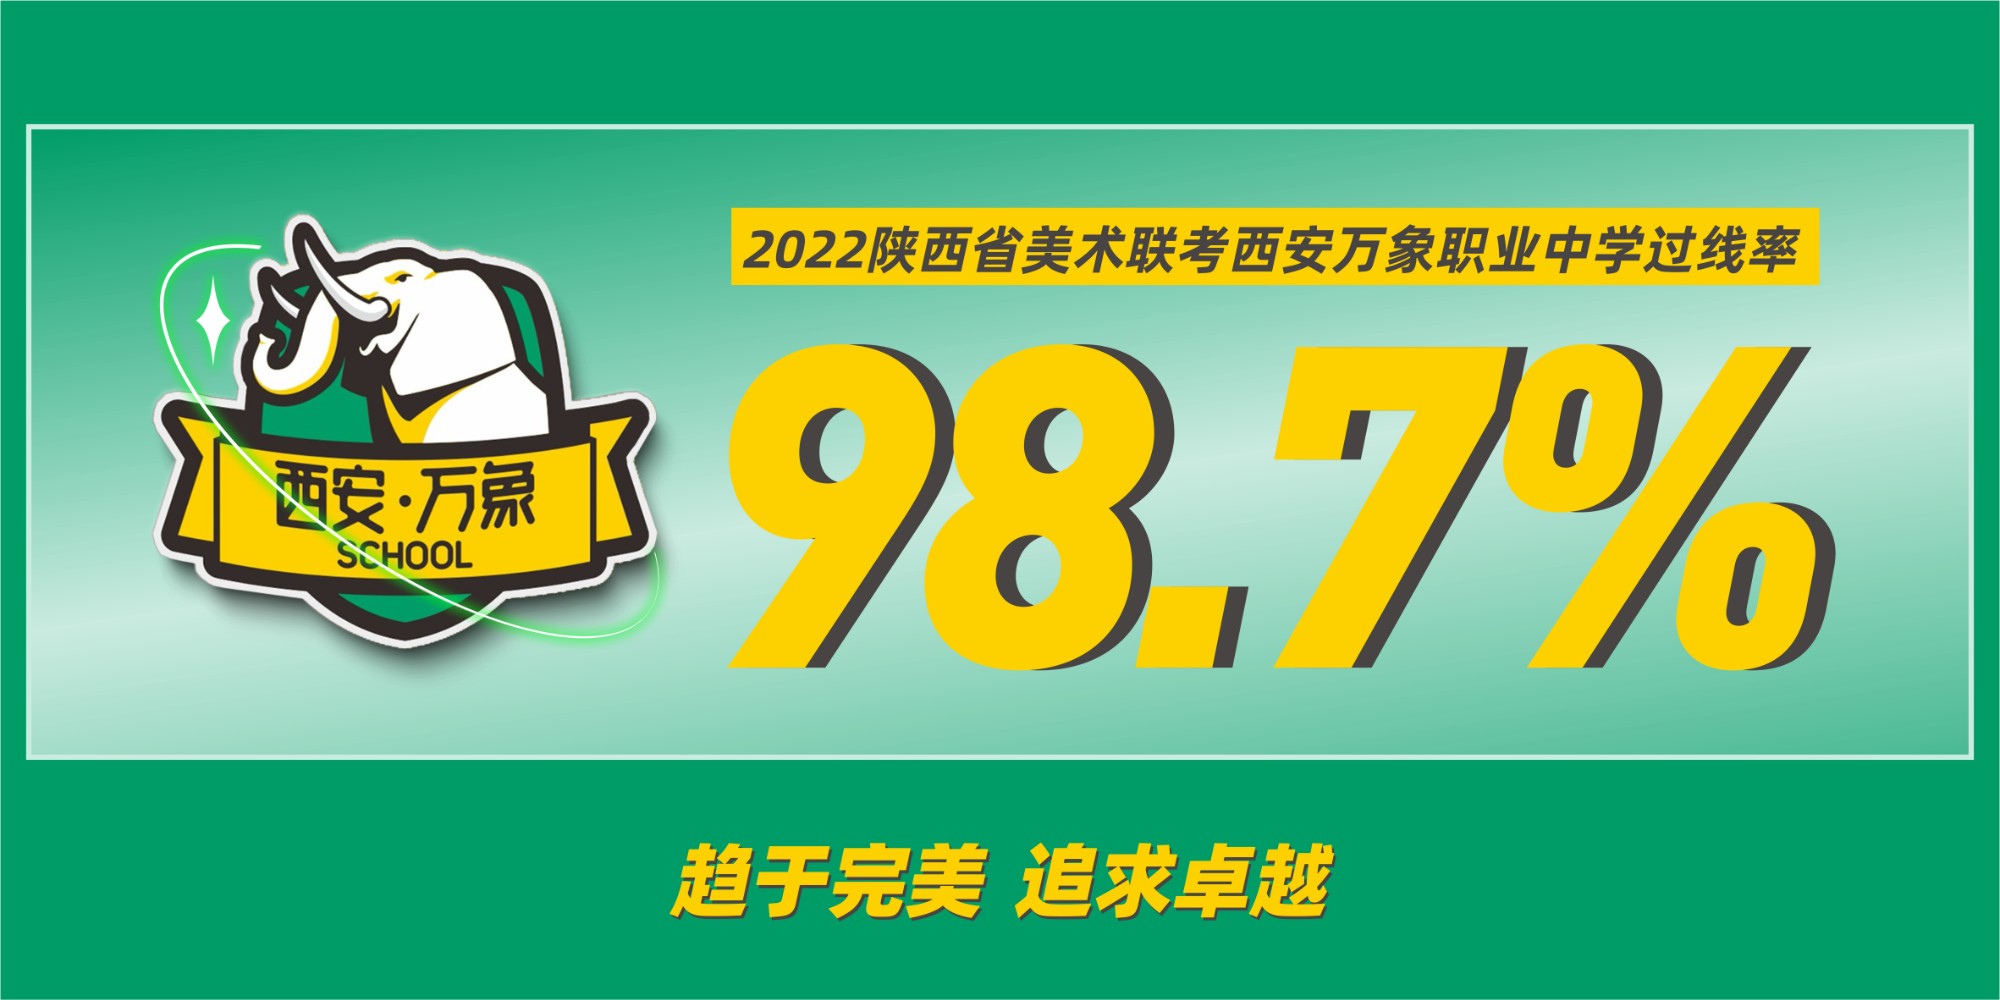 西安万象职业中学 2022陕西省美术统考成绩过线率98.7%！